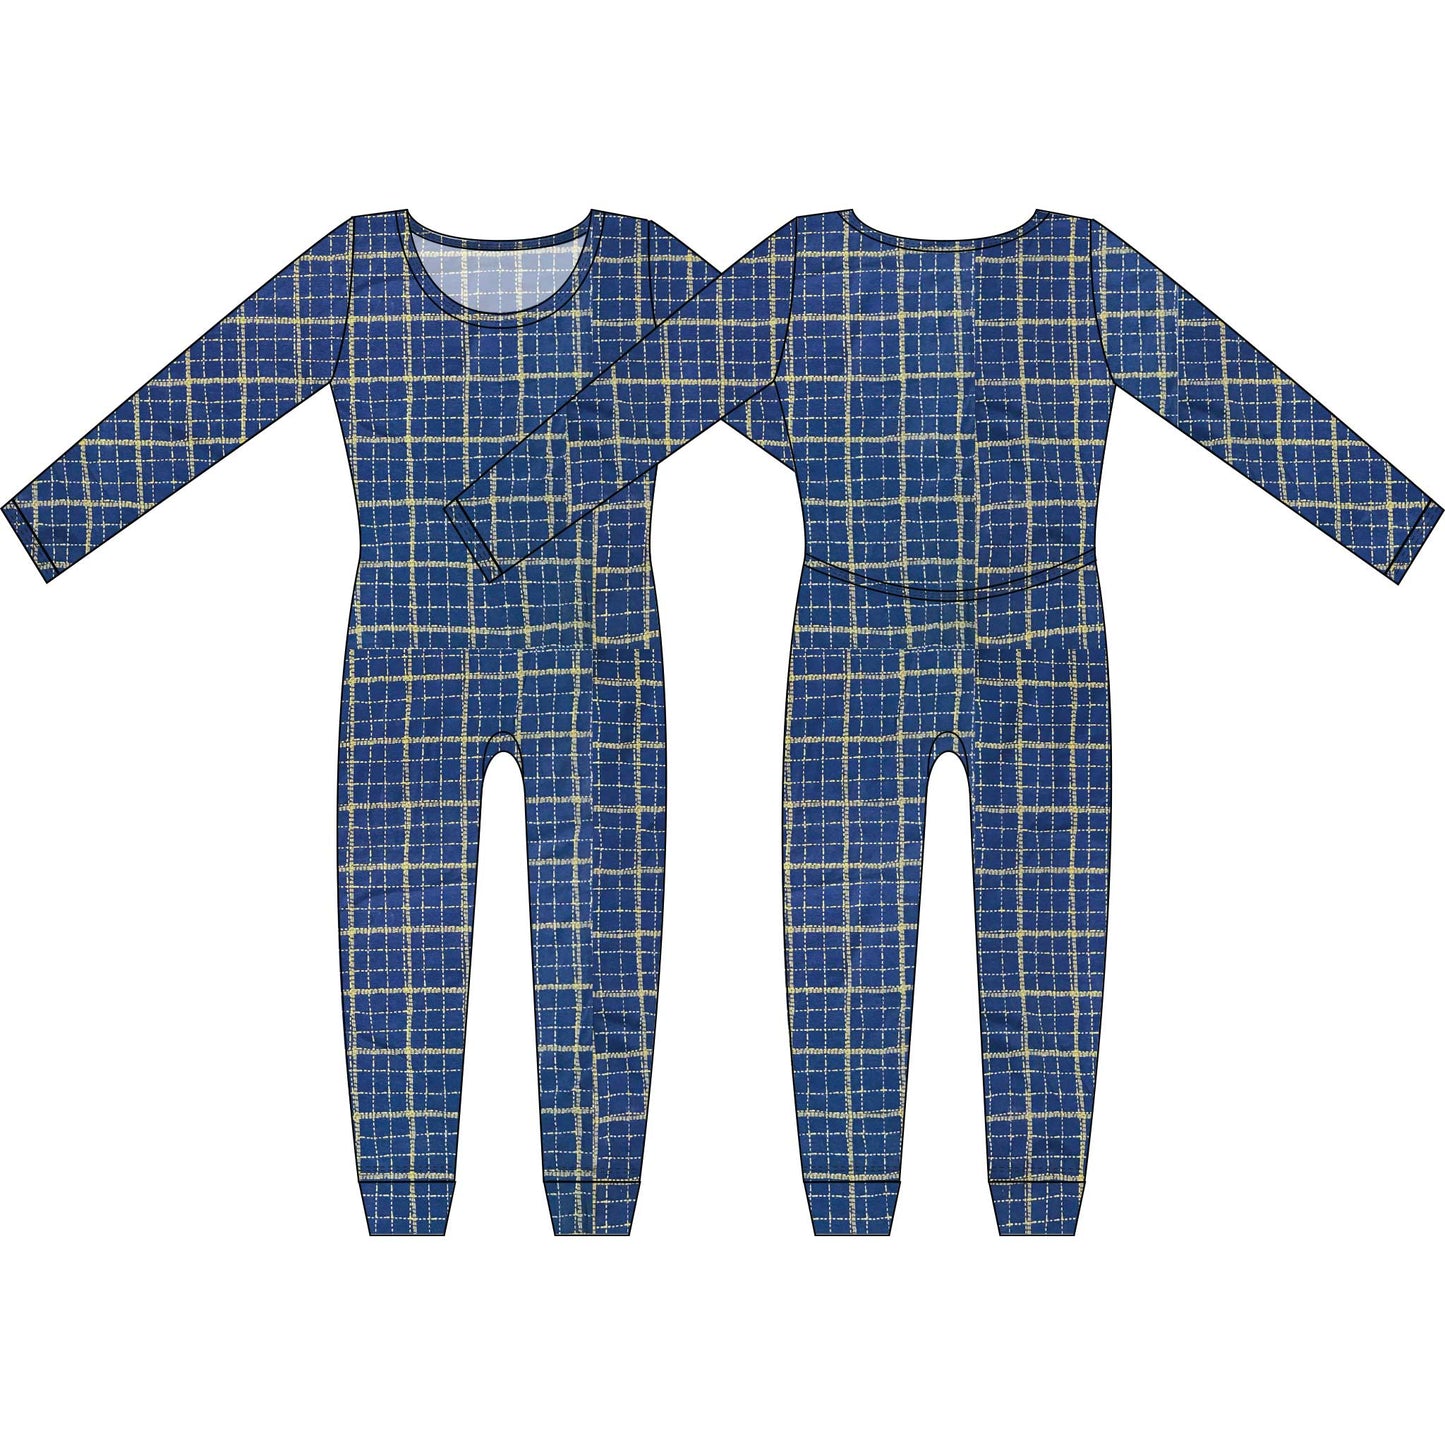 MoonEaze™ | Cotton Knit Women's Union Suit - Various Fun Prints-Union Suit-Small-Sea Plaid-Hagsters